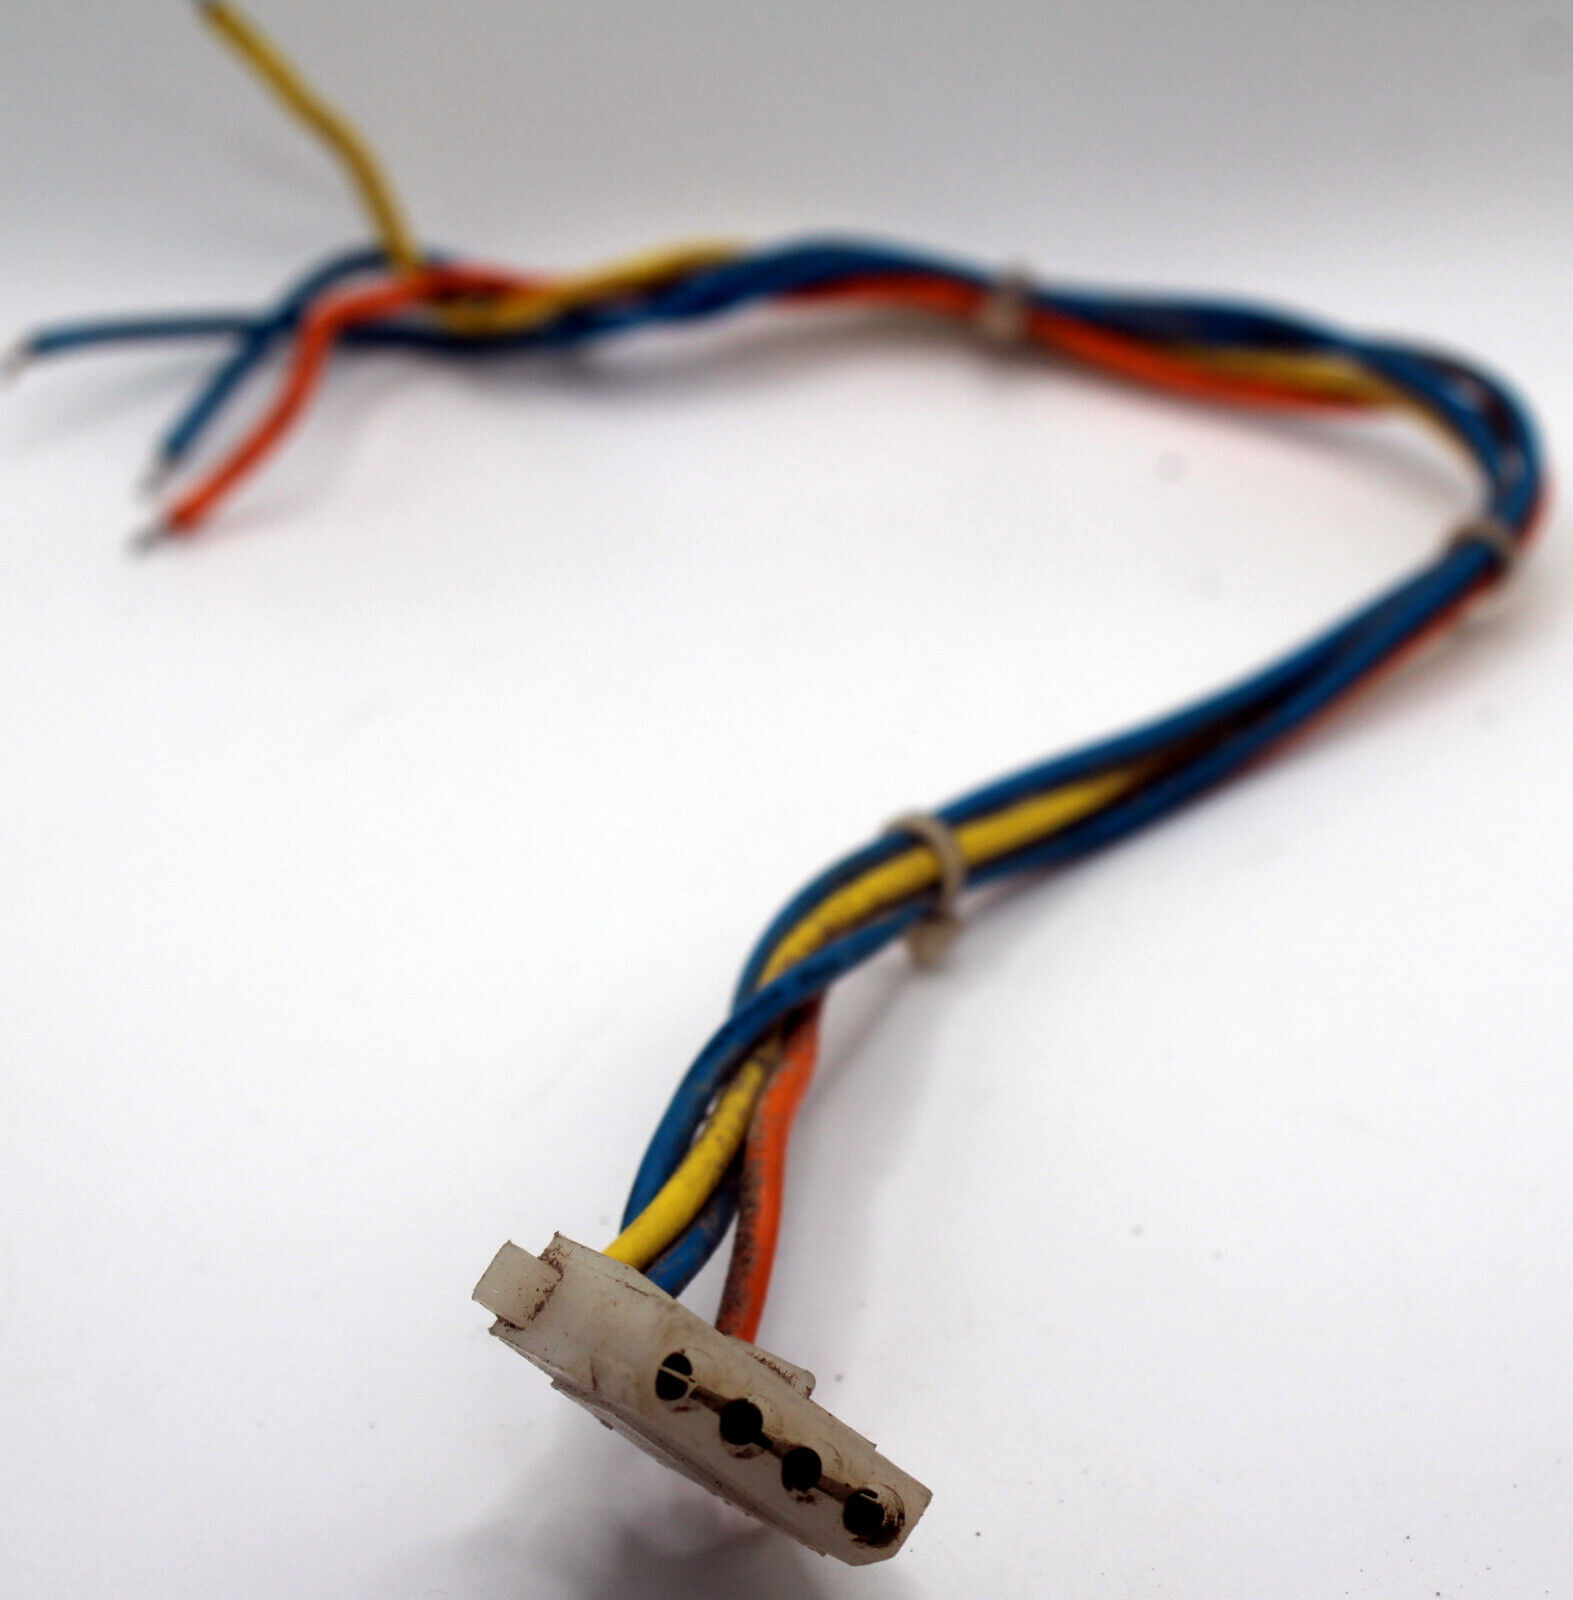 1985 Commodore PC10-II Genuine Power Supply 4-PIN Molex Connector w/ 40cm Cable 